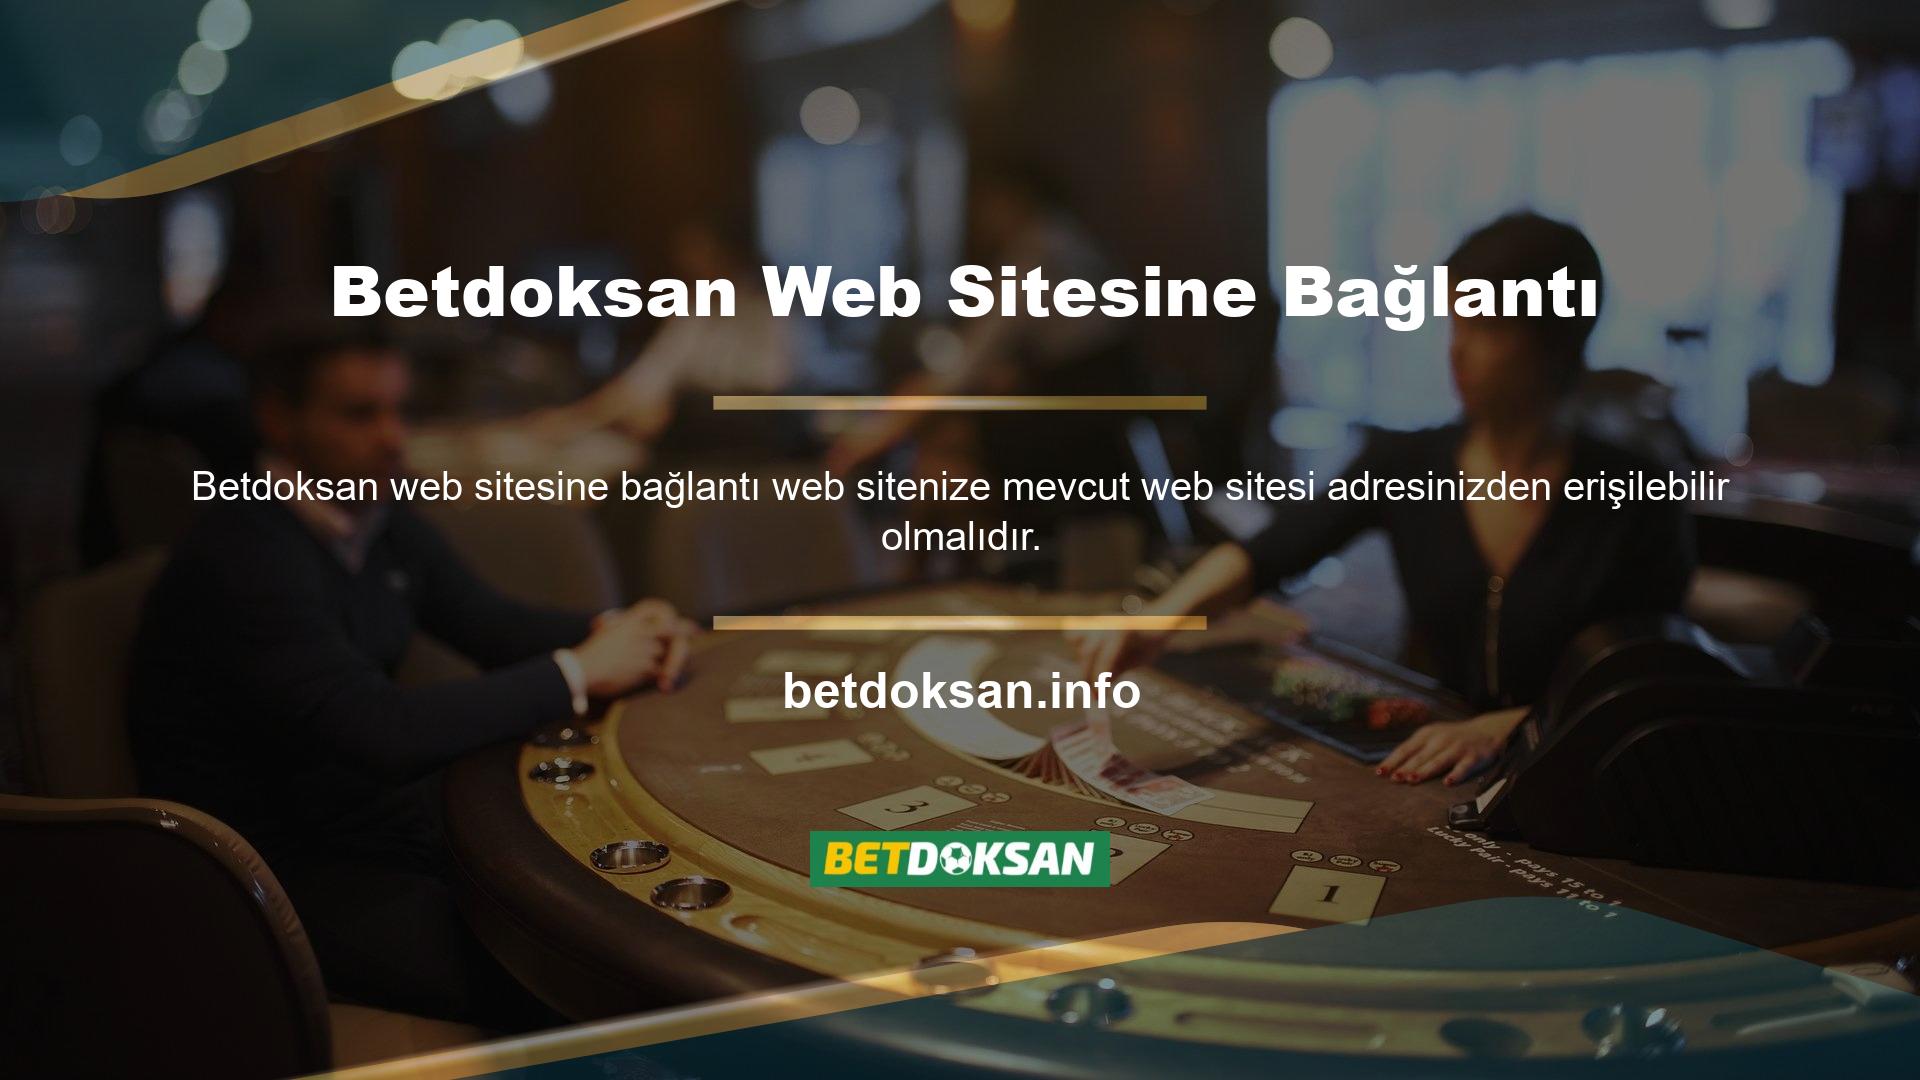 Web sitesine giriş yaptıktan sonra Betdoksan web sitesi bağlantısının ardından yer alan web sitesine giriş seçeneğine tıklamanız gerekmektedir